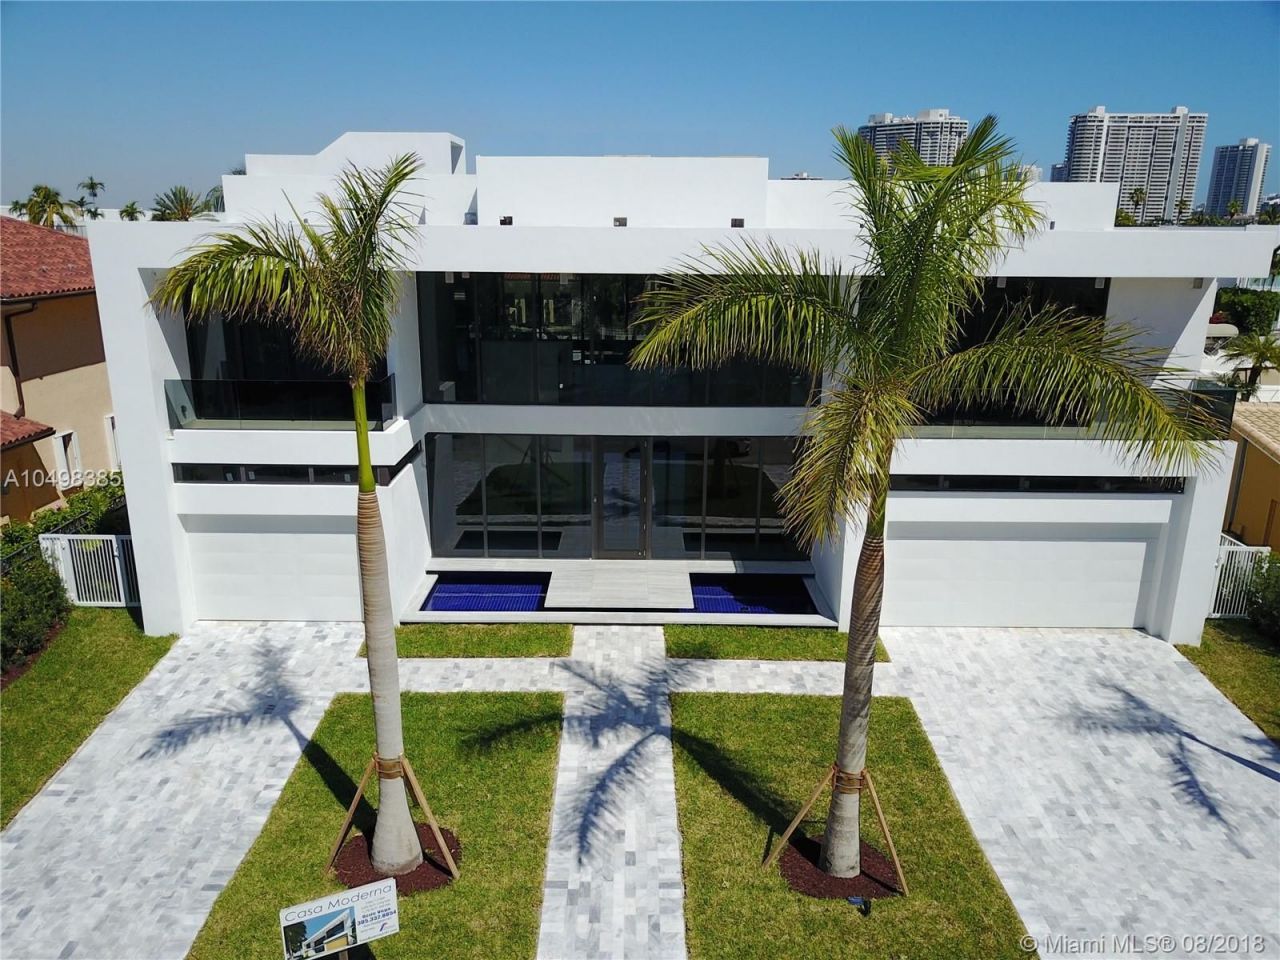 Villa in Miami, USA, 620 m2 - Foto 1